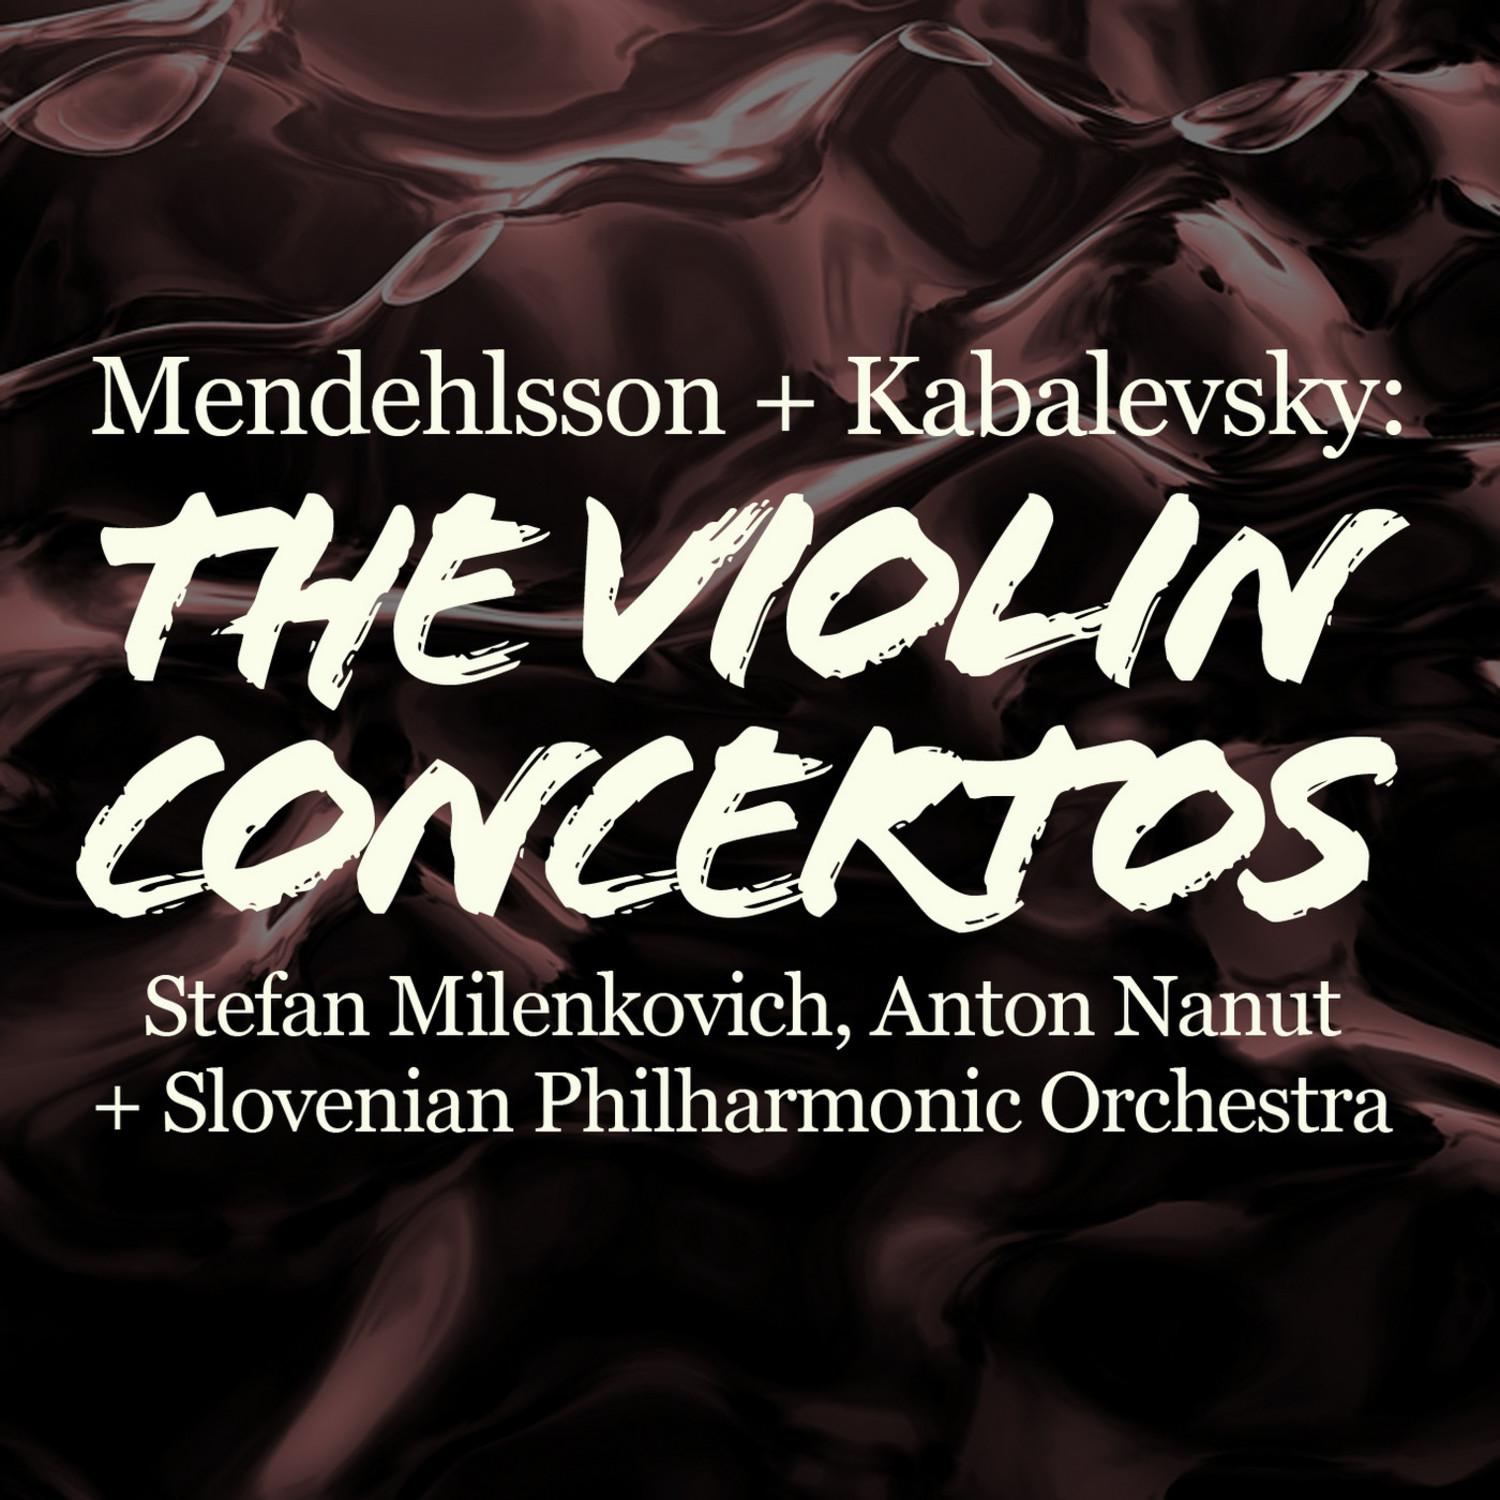 Mendelssohn and Kabalevsky: The Violin Concertos